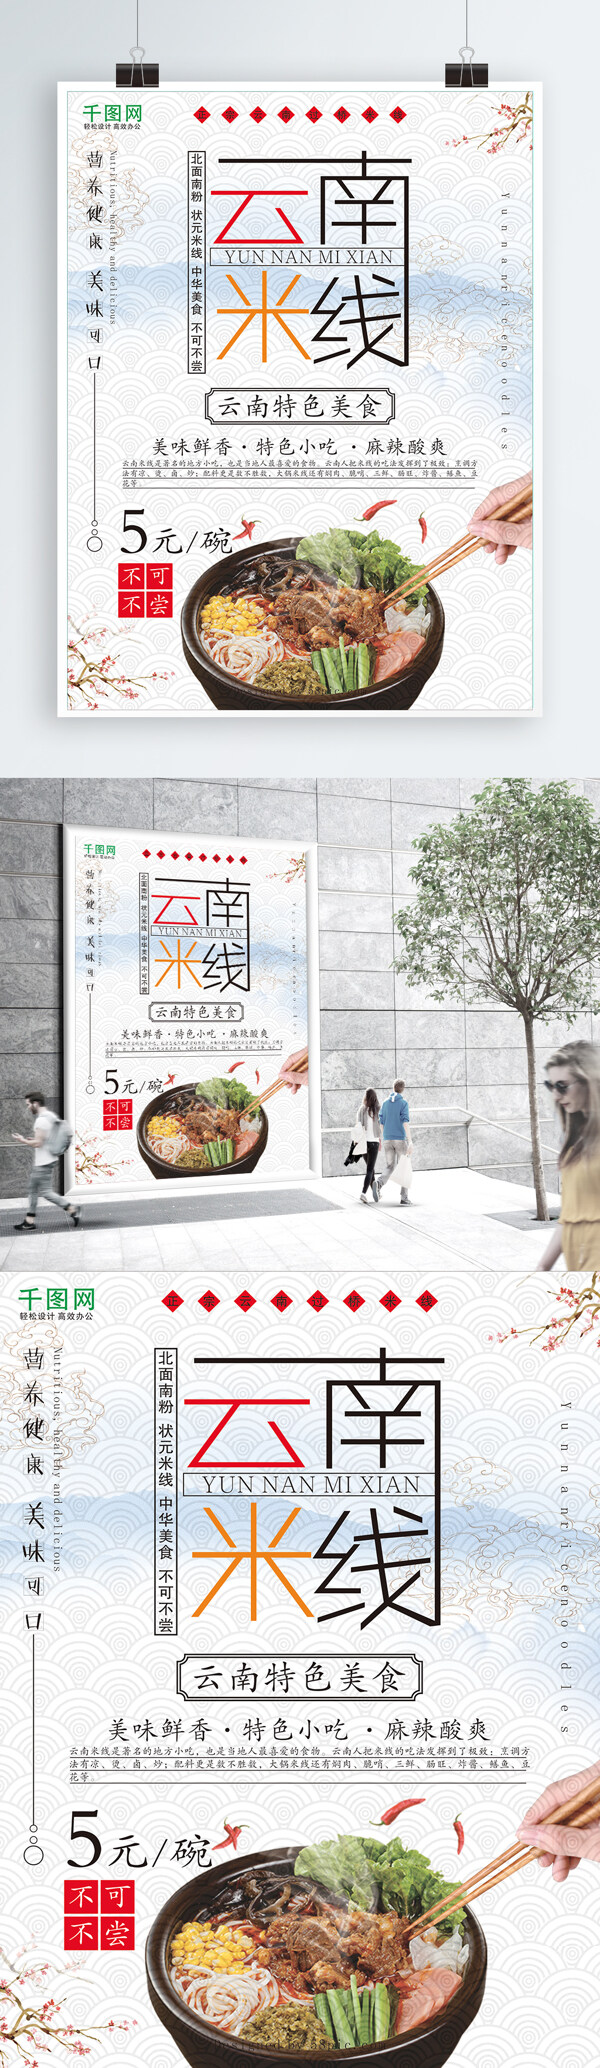 云南米线美食海报